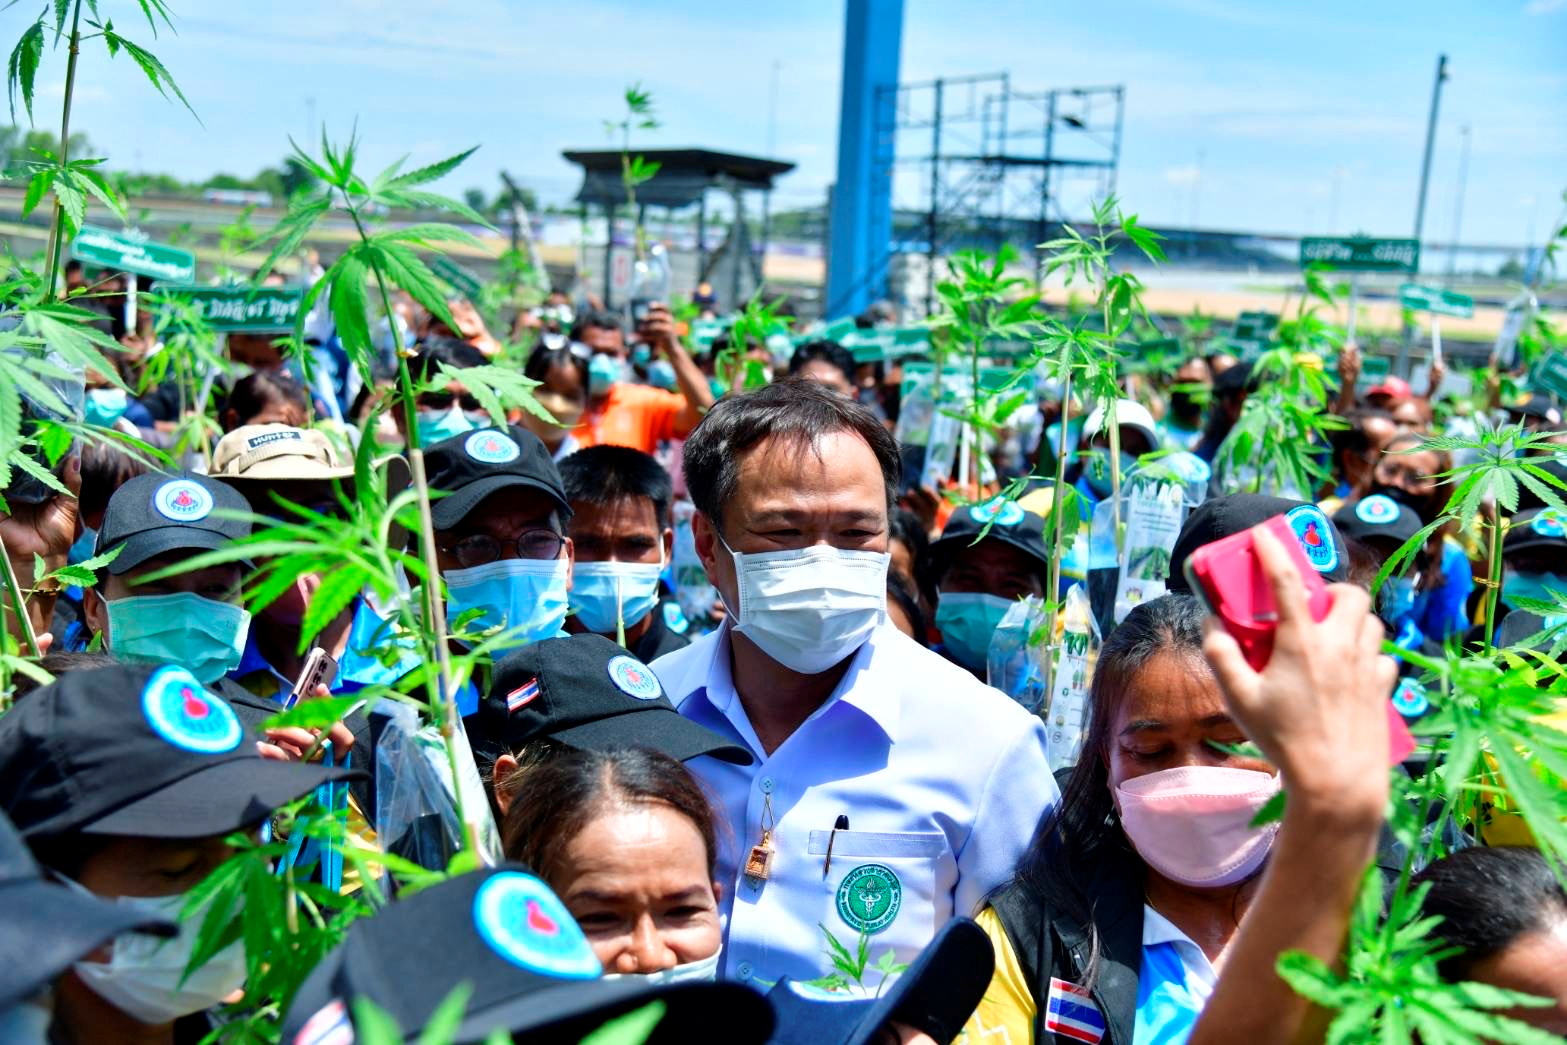 Ταϊλάνδη: Μοιράζουν δωρεάν φυτά κάνναβης μετά την νομιμοποίηση της καλλιέργειάς της